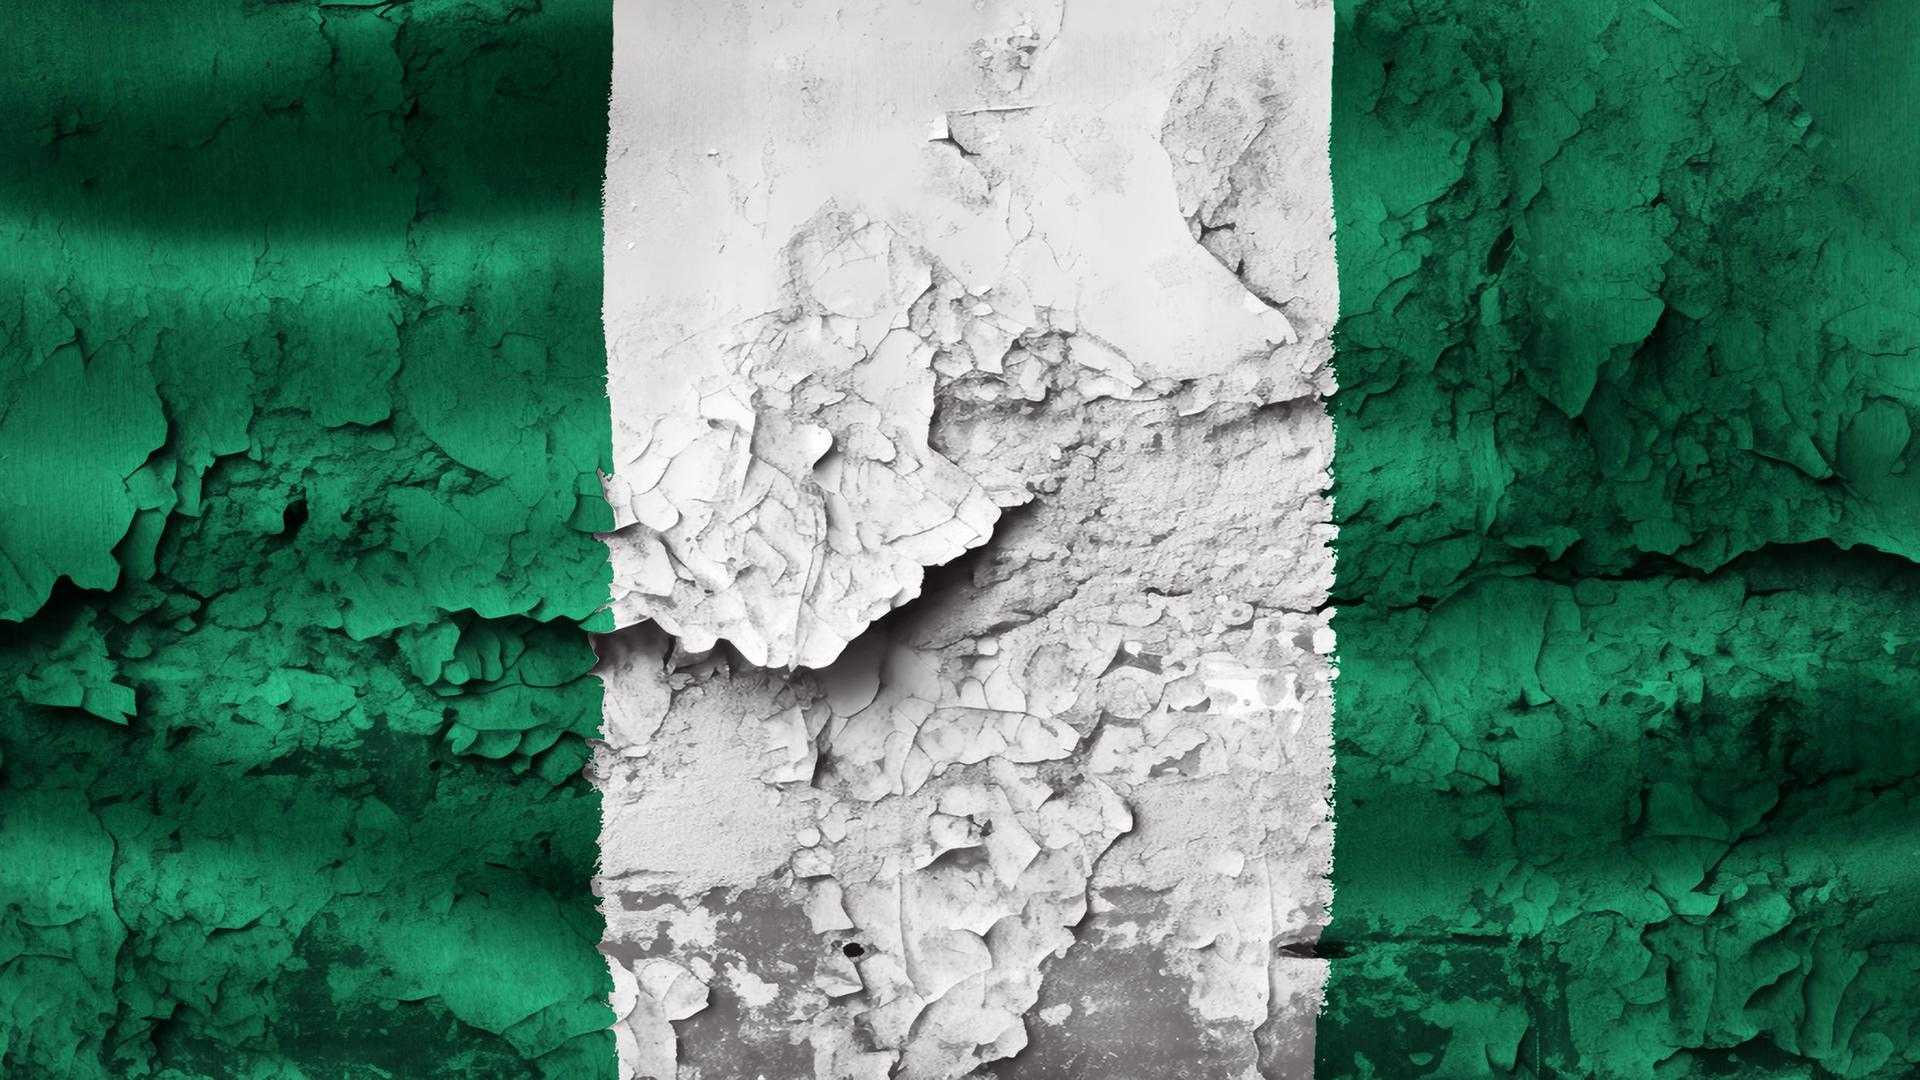 Die nigerianische Flagge auf Asphalt gemalt - die Farbe blättert ab.